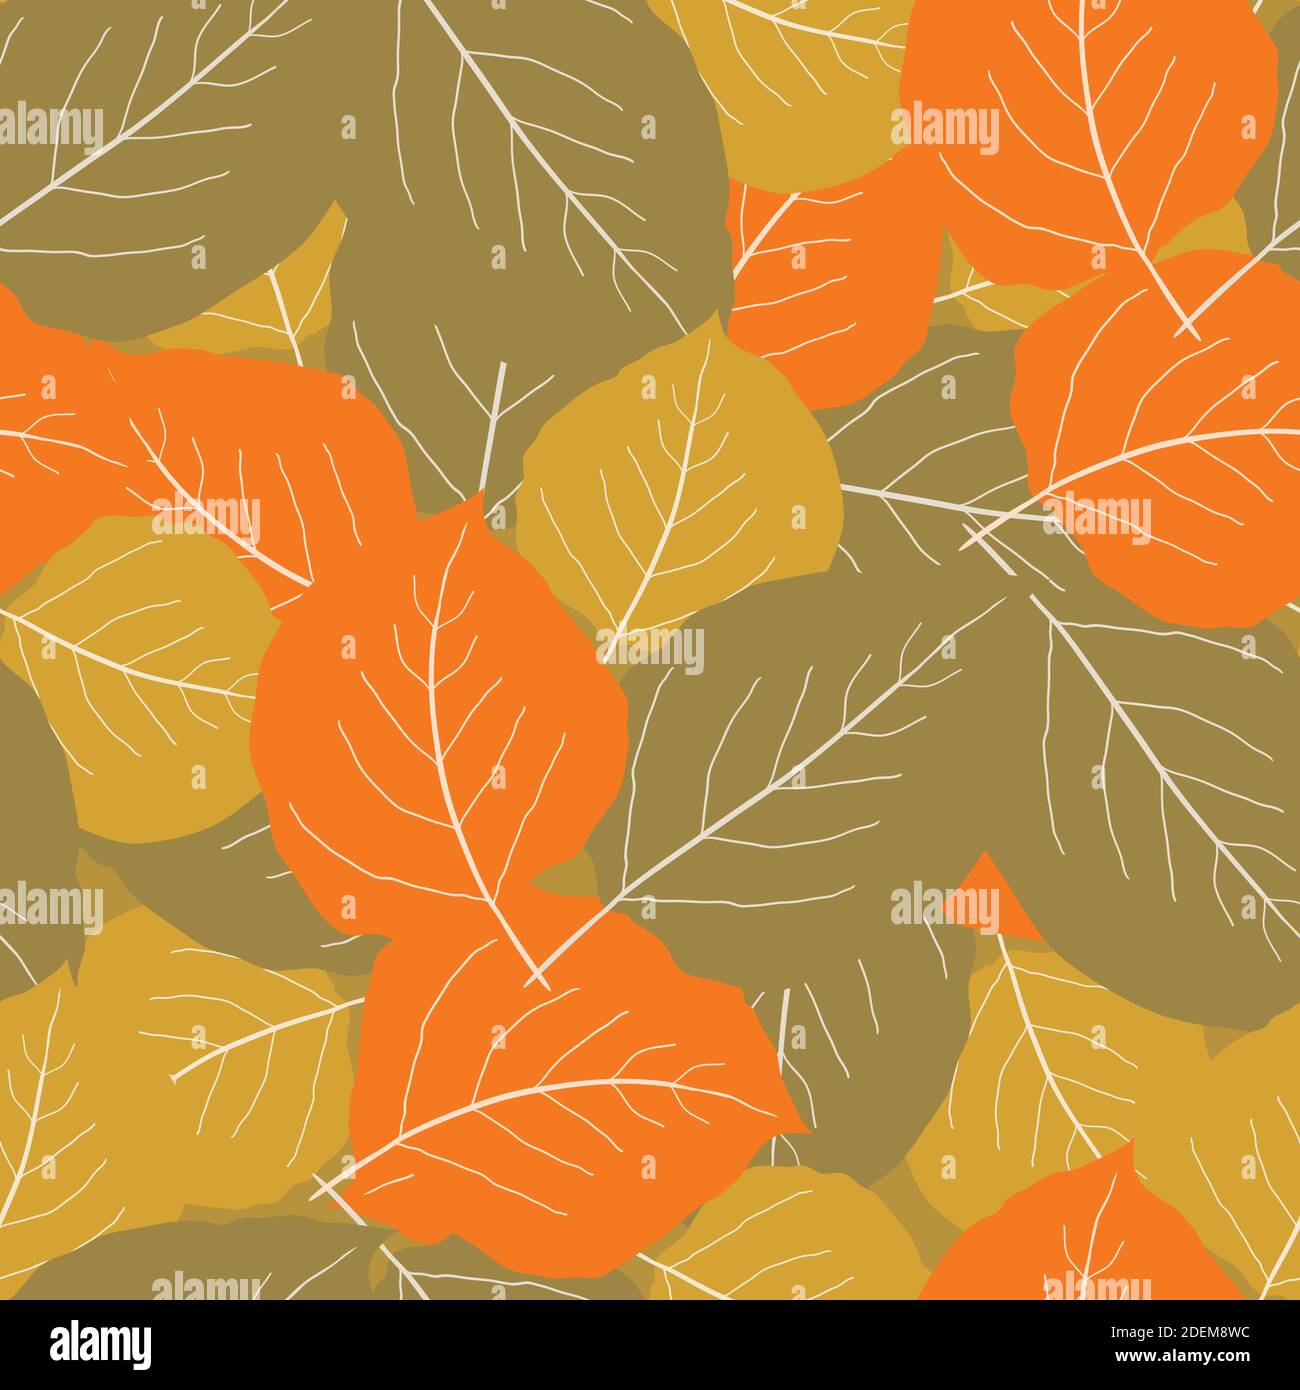 Orange, or, brun clair feuille de peuplier faux-tremble fond de motif vectoriel sans couture. Chevauchement de feuilles dessinées à la main dispersées en couleurs d'automne. Résumé de texture Illustration de Vecteur